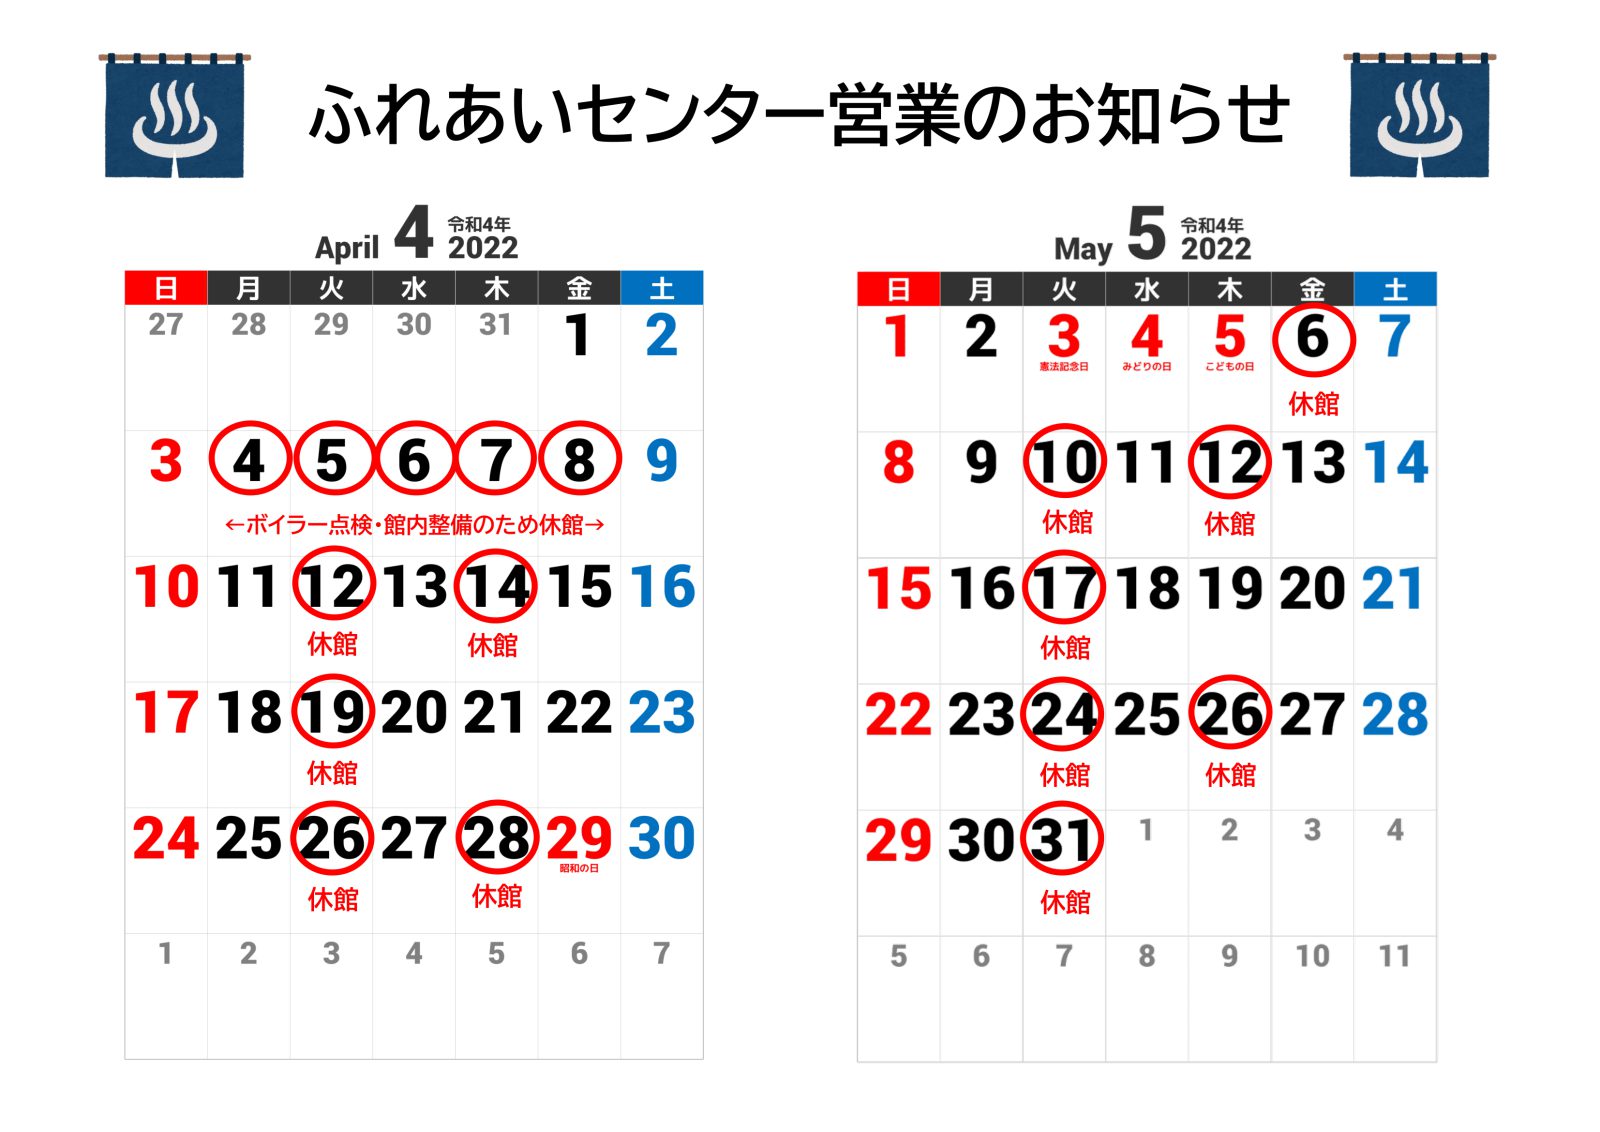 【ふれあいセンター】5月の営業カレンダーについて